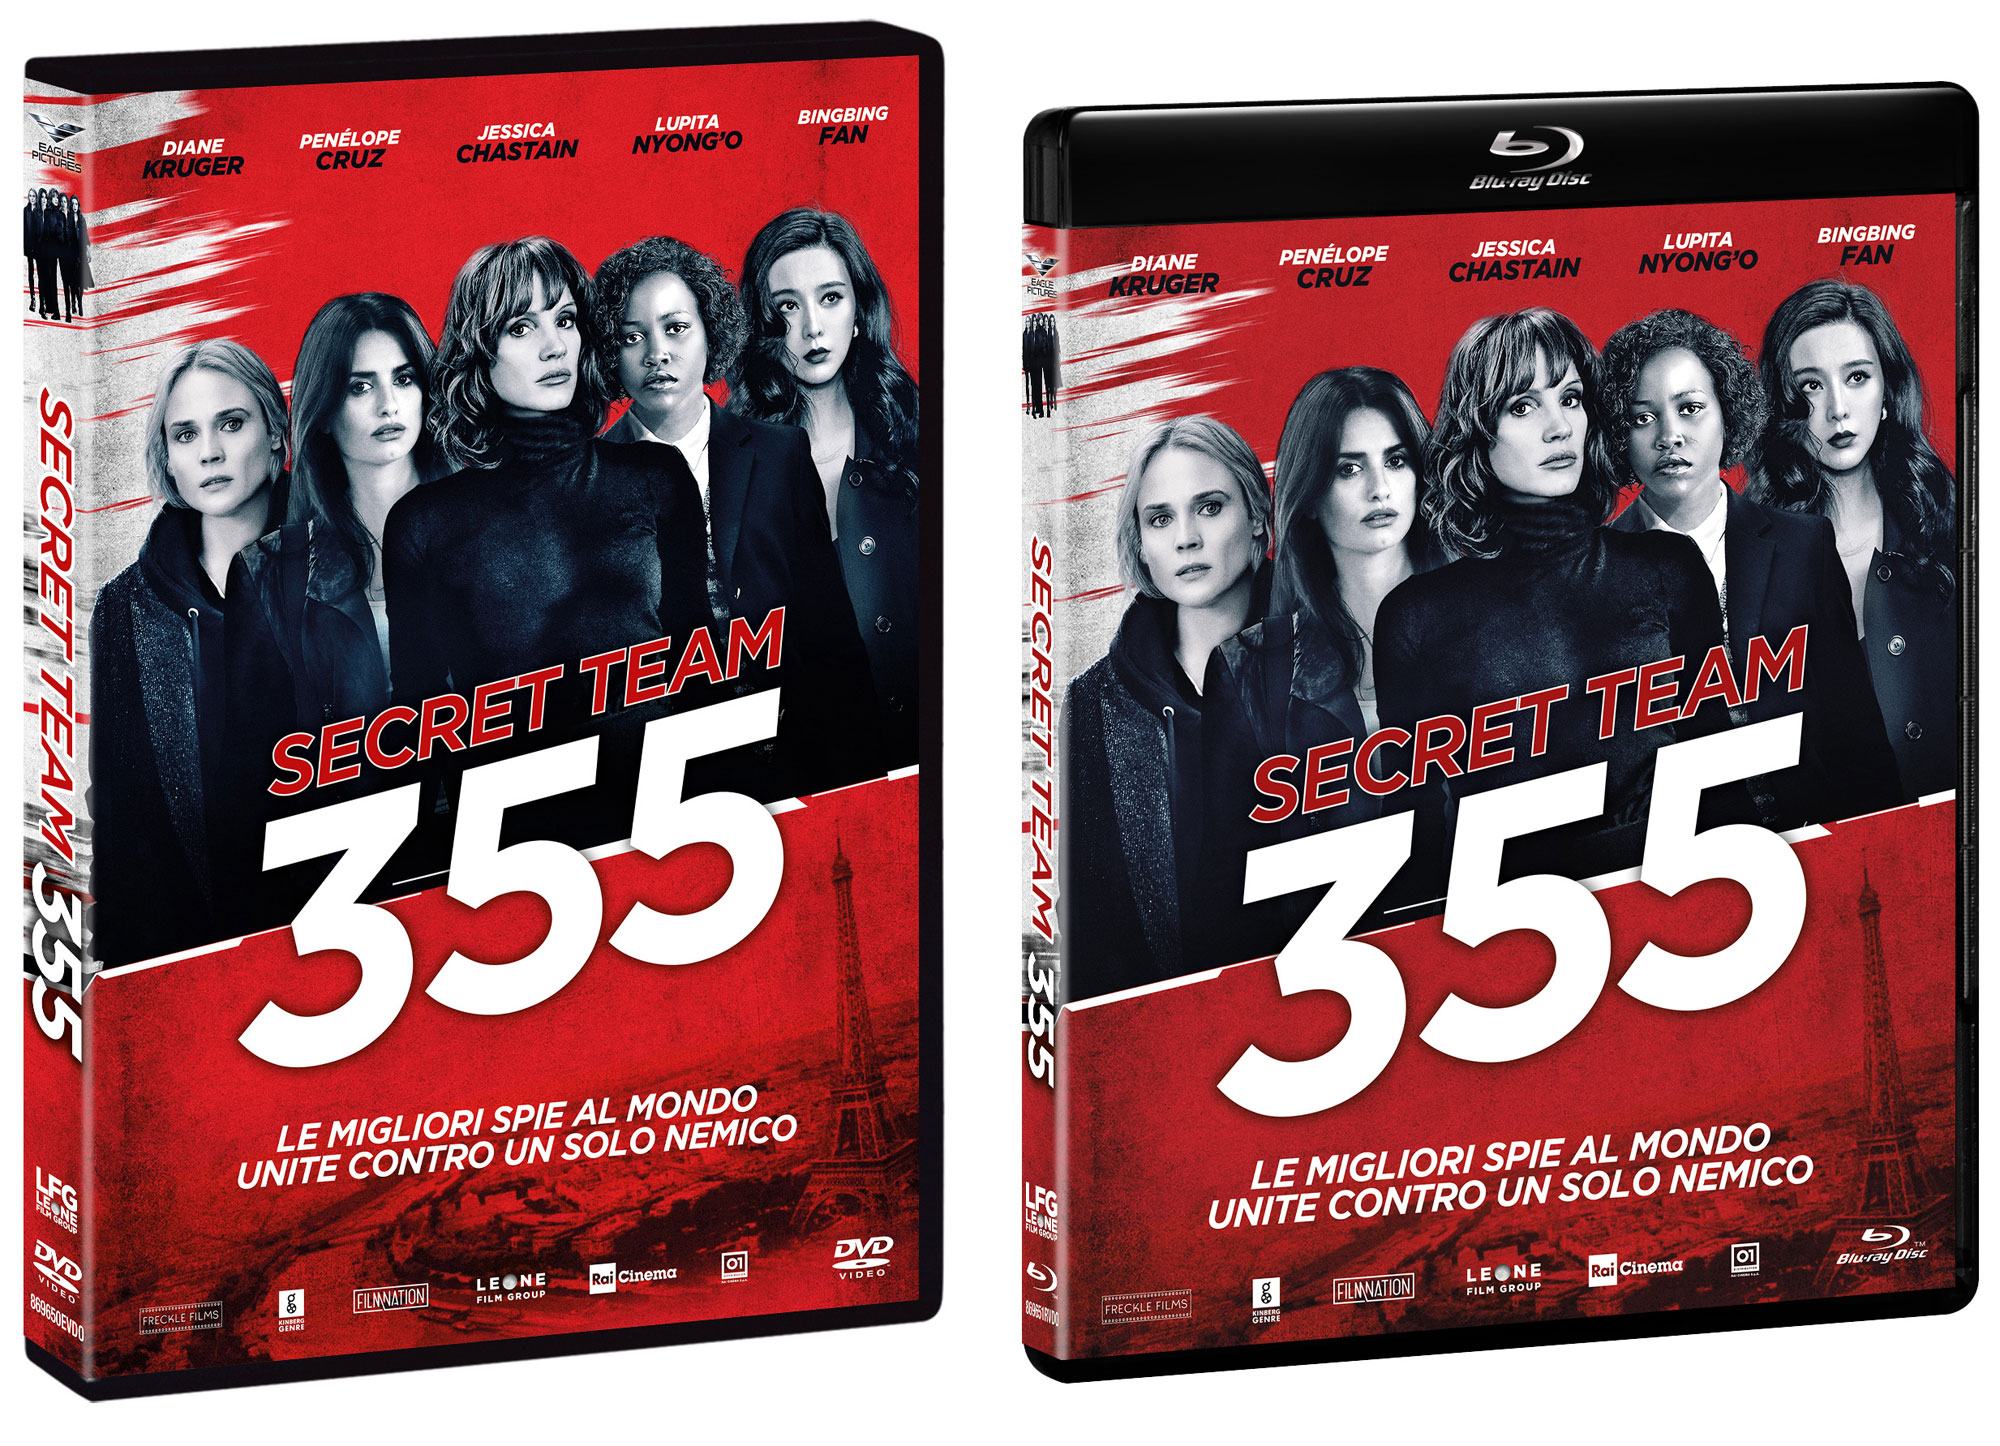 SECRET TEAM 355 in DVD e Blu- Ray